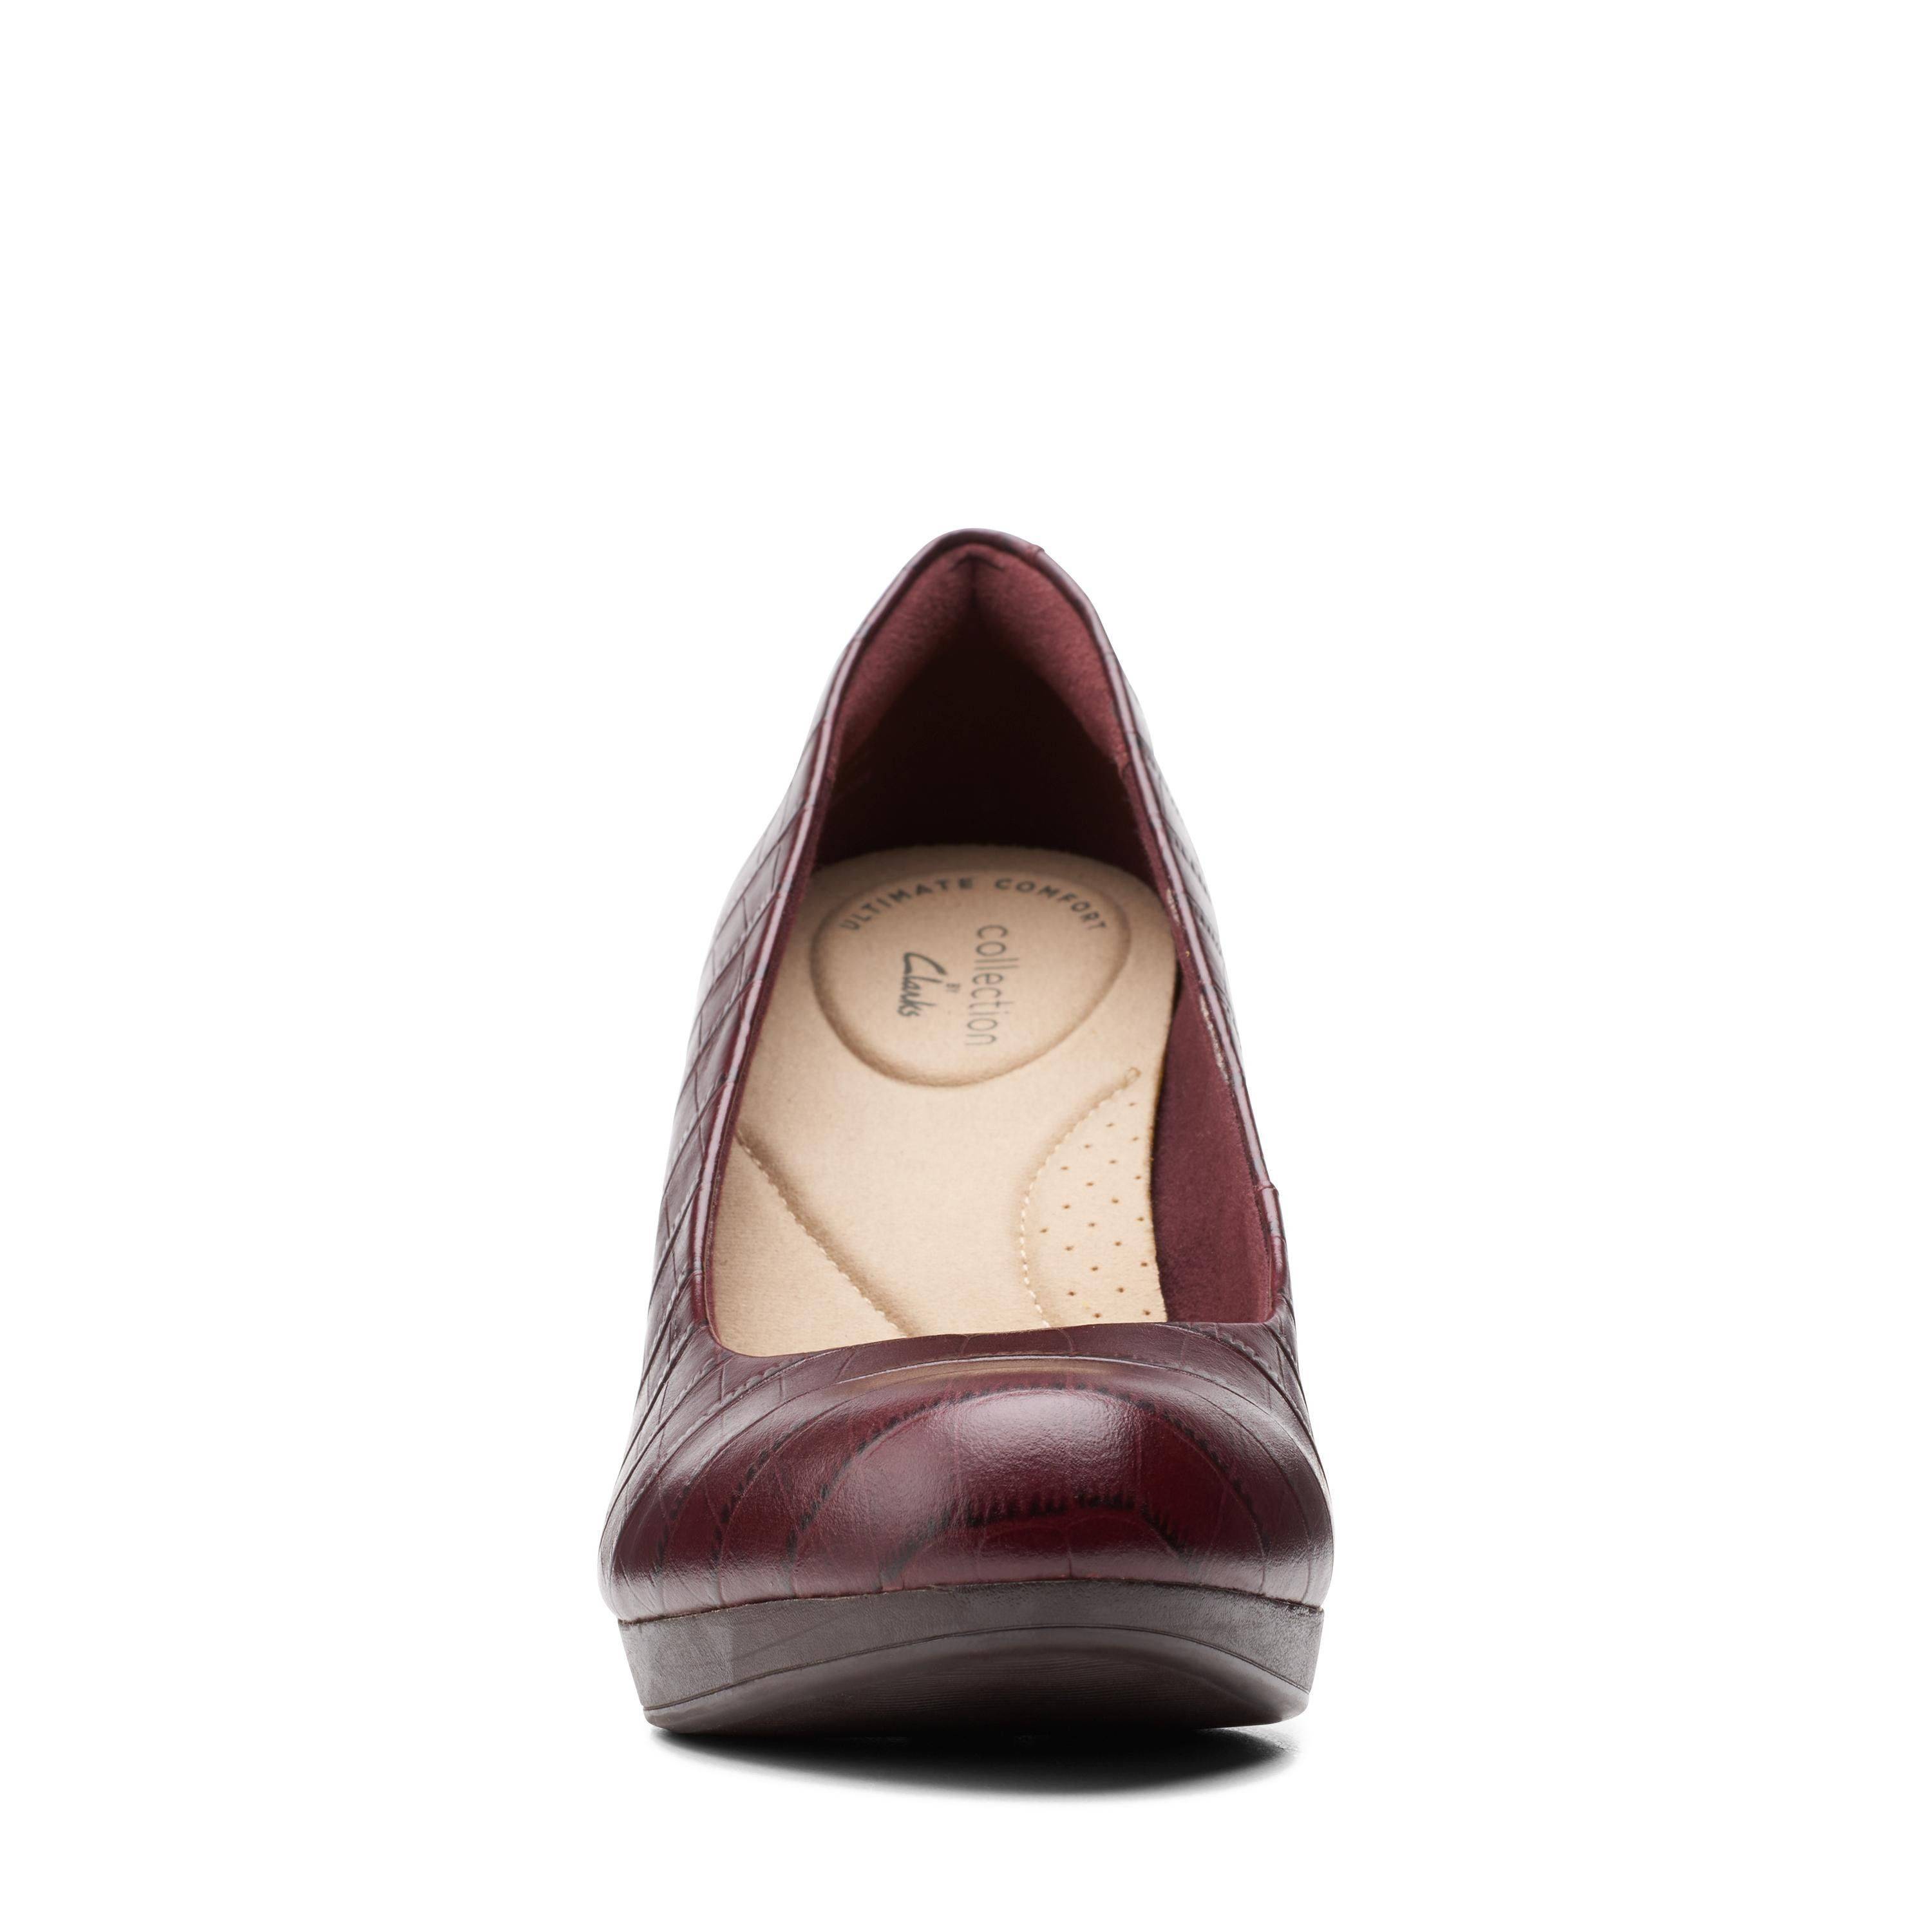 Женские туфли-лодочки Clarks(Adriel Viola 26151330), бордовые, цвет бордовый, размер 39.5 - фото 3